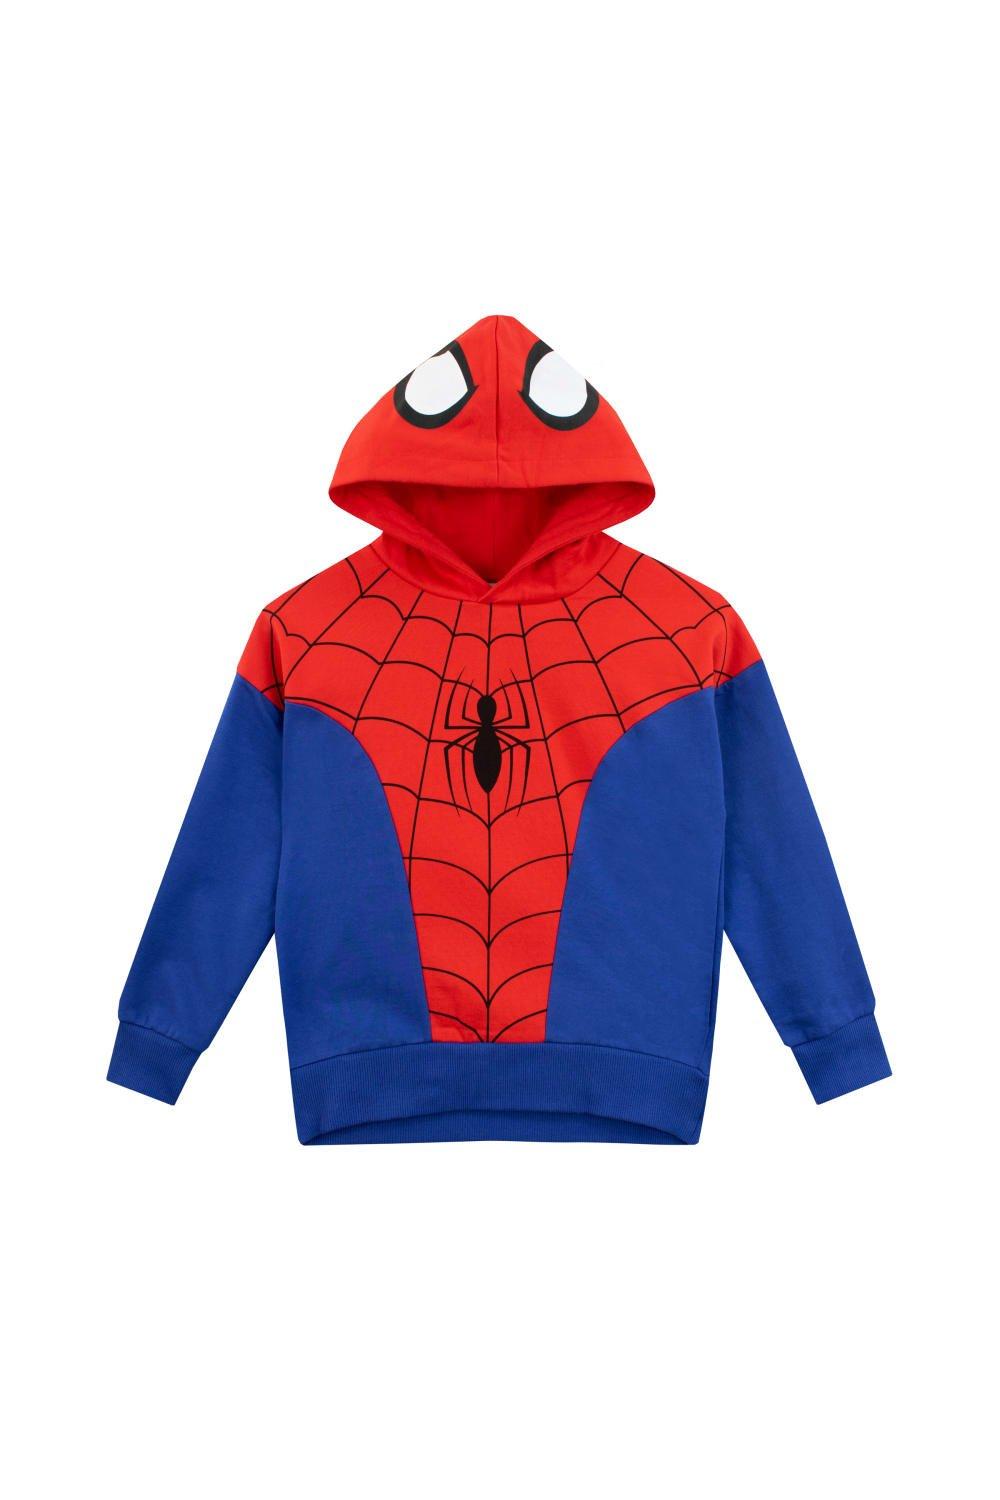 Spiderman Dress Up Hoodie